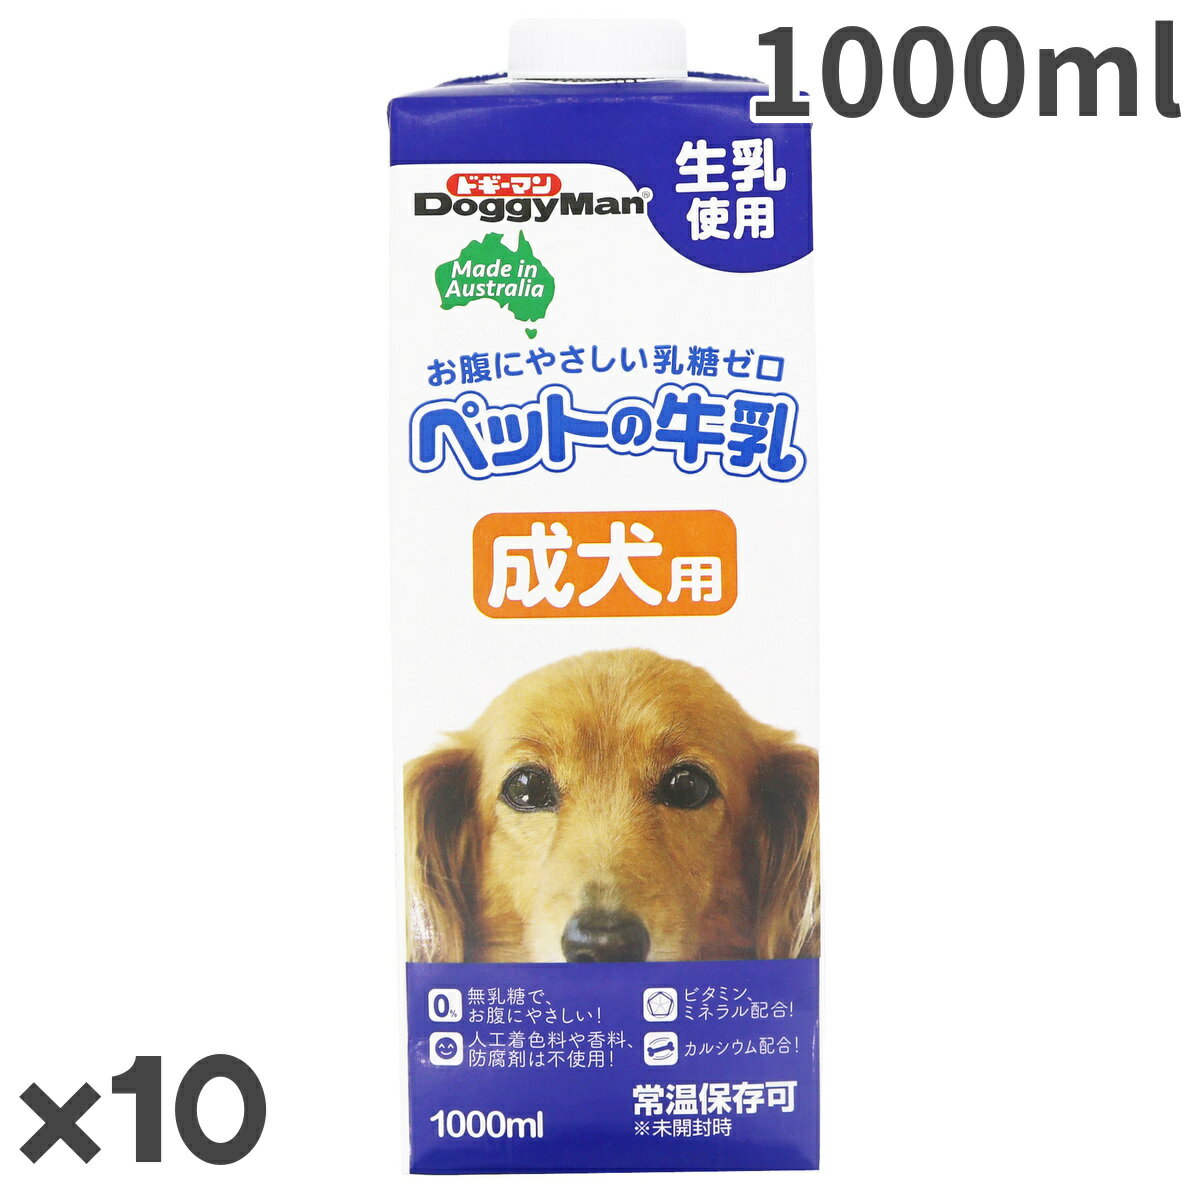 【お取寄せ品】ドギーマン ペットの牛乳 成犬用 1000ml×10入【送料無料】